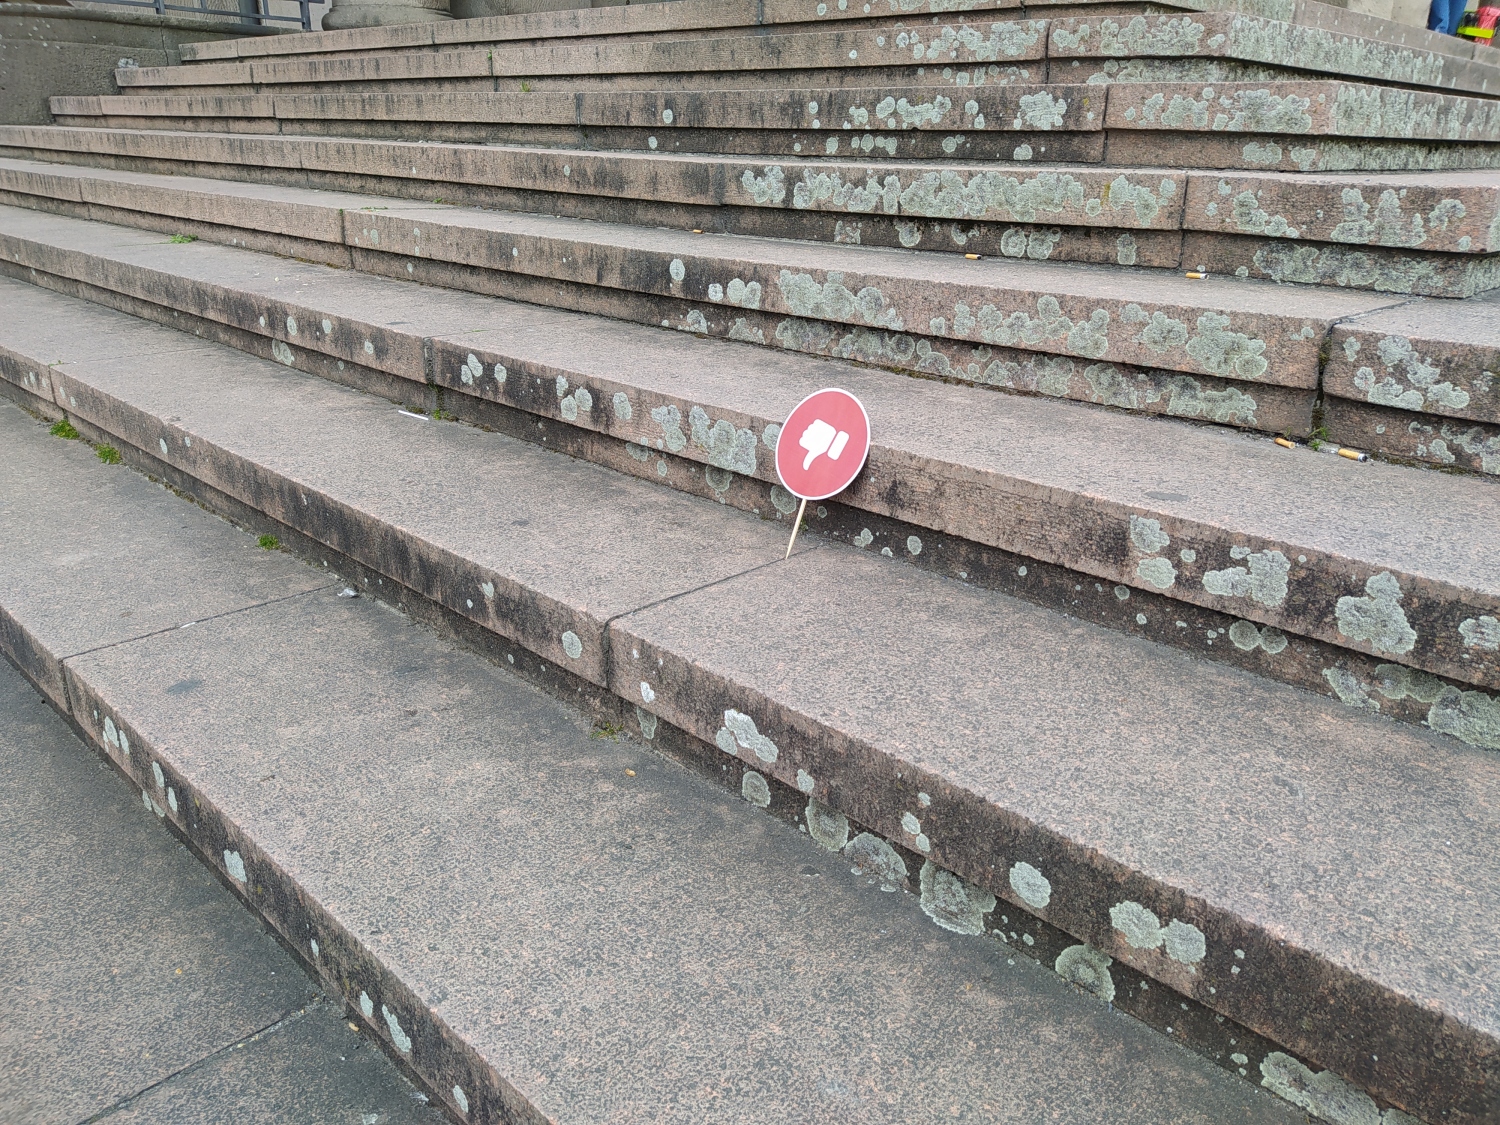 Auf dem Bild ist eine Steintreppe zu sehen. In den Fugen ist ein rundes rotes Schild eingehängt, auf dem ein Daumen, der nach unten zeigt, zu sehen ist.